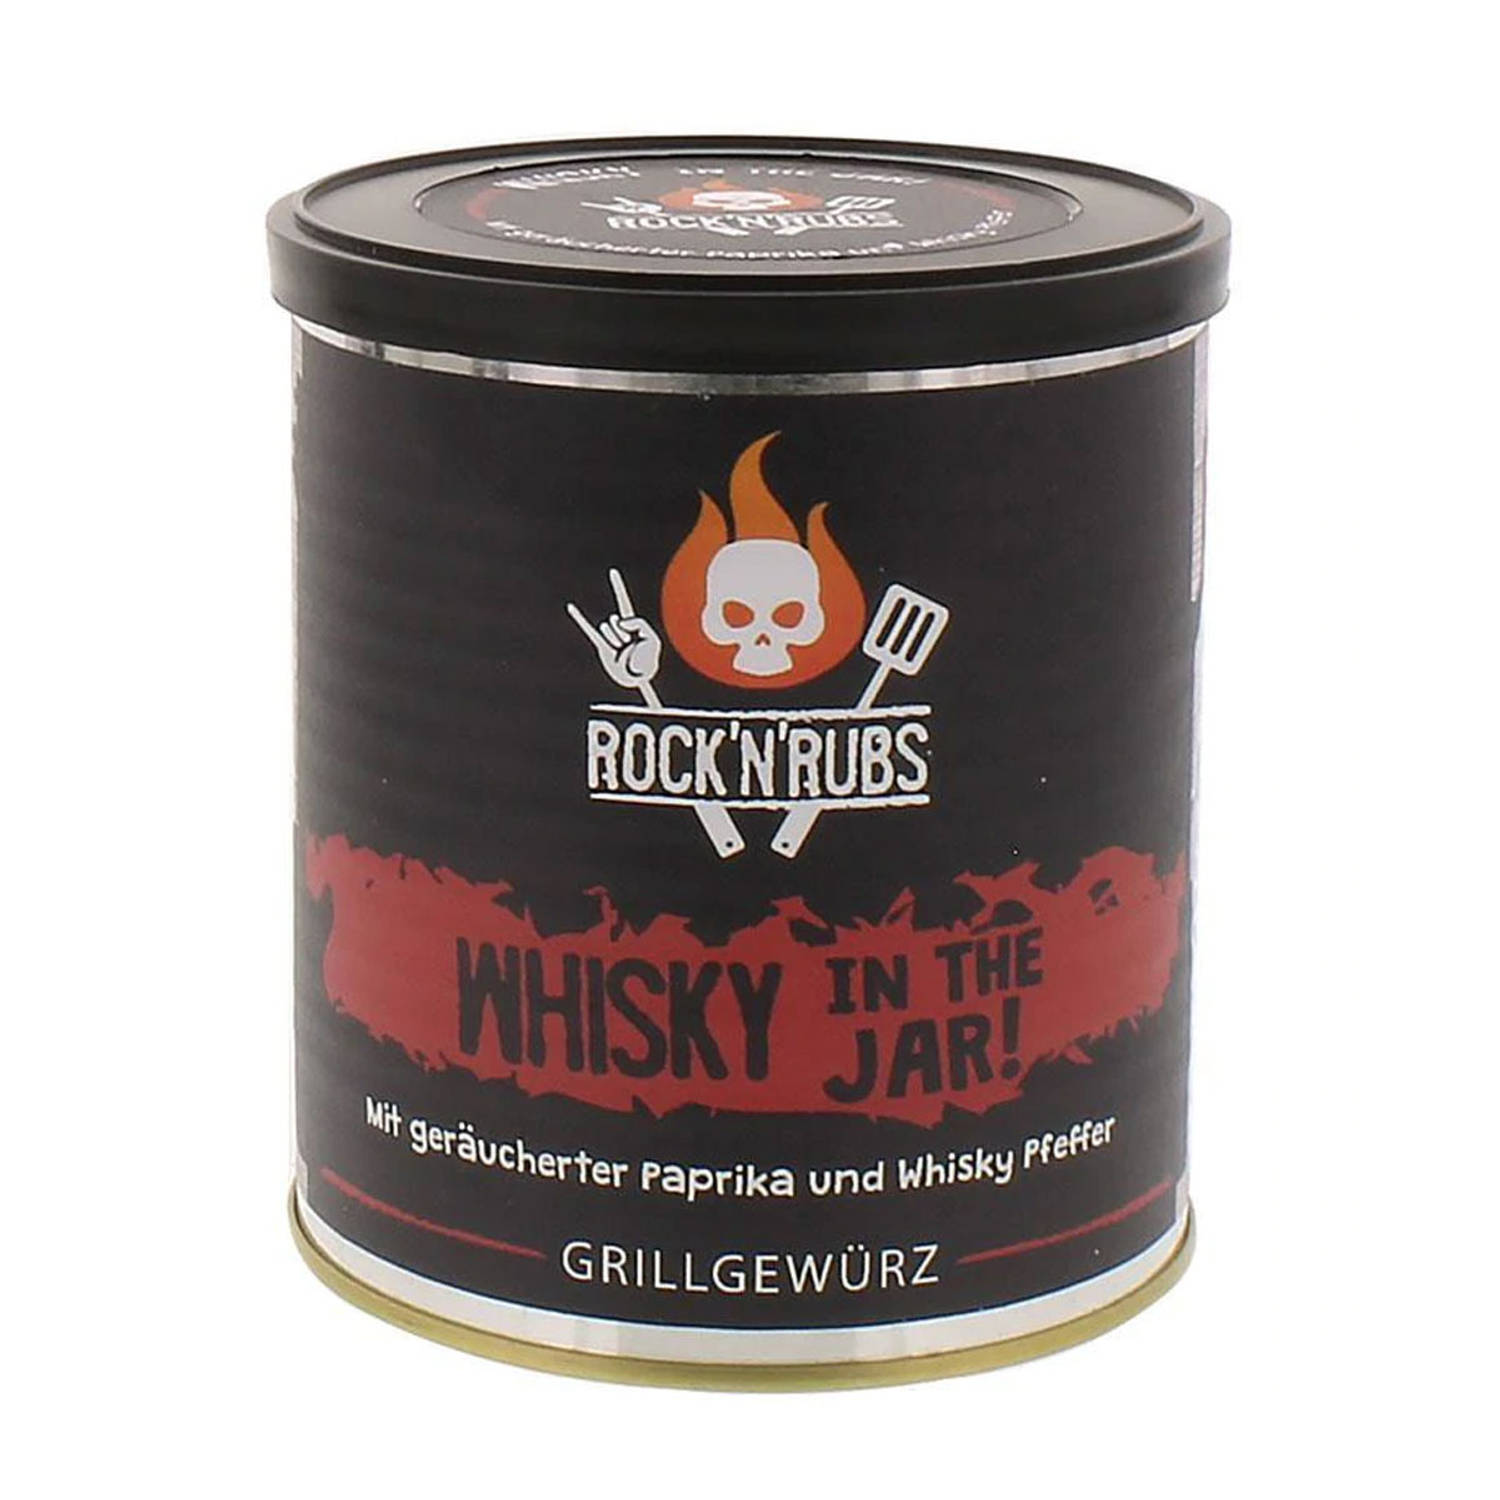 Rock 'n' Rubs - Whisky in the jar